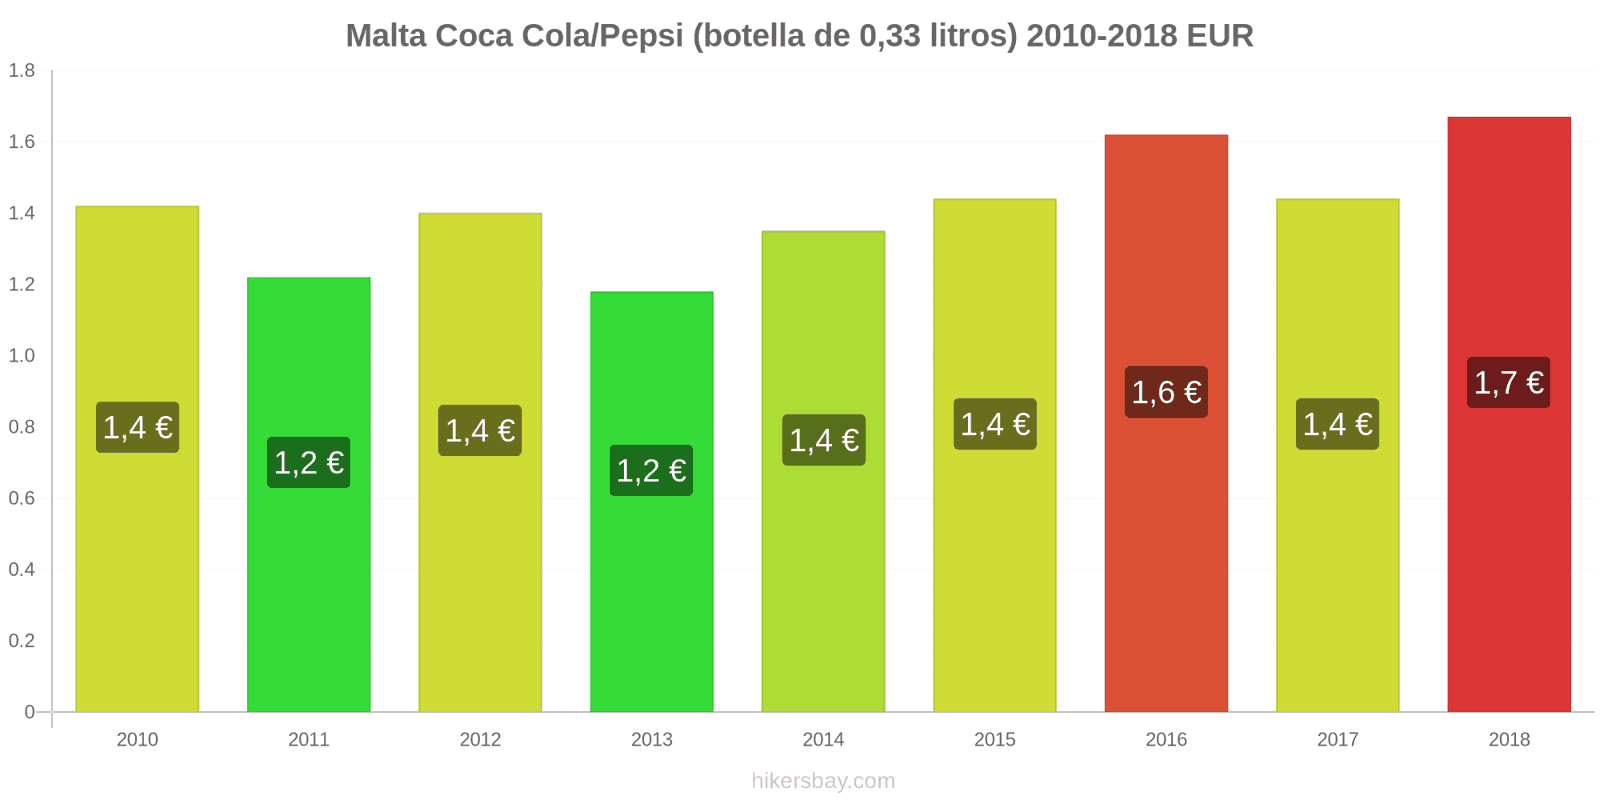 Malta cambios de precios Coca-Cola/Pepsi (botella de 0.33 litros) hikersbay.com